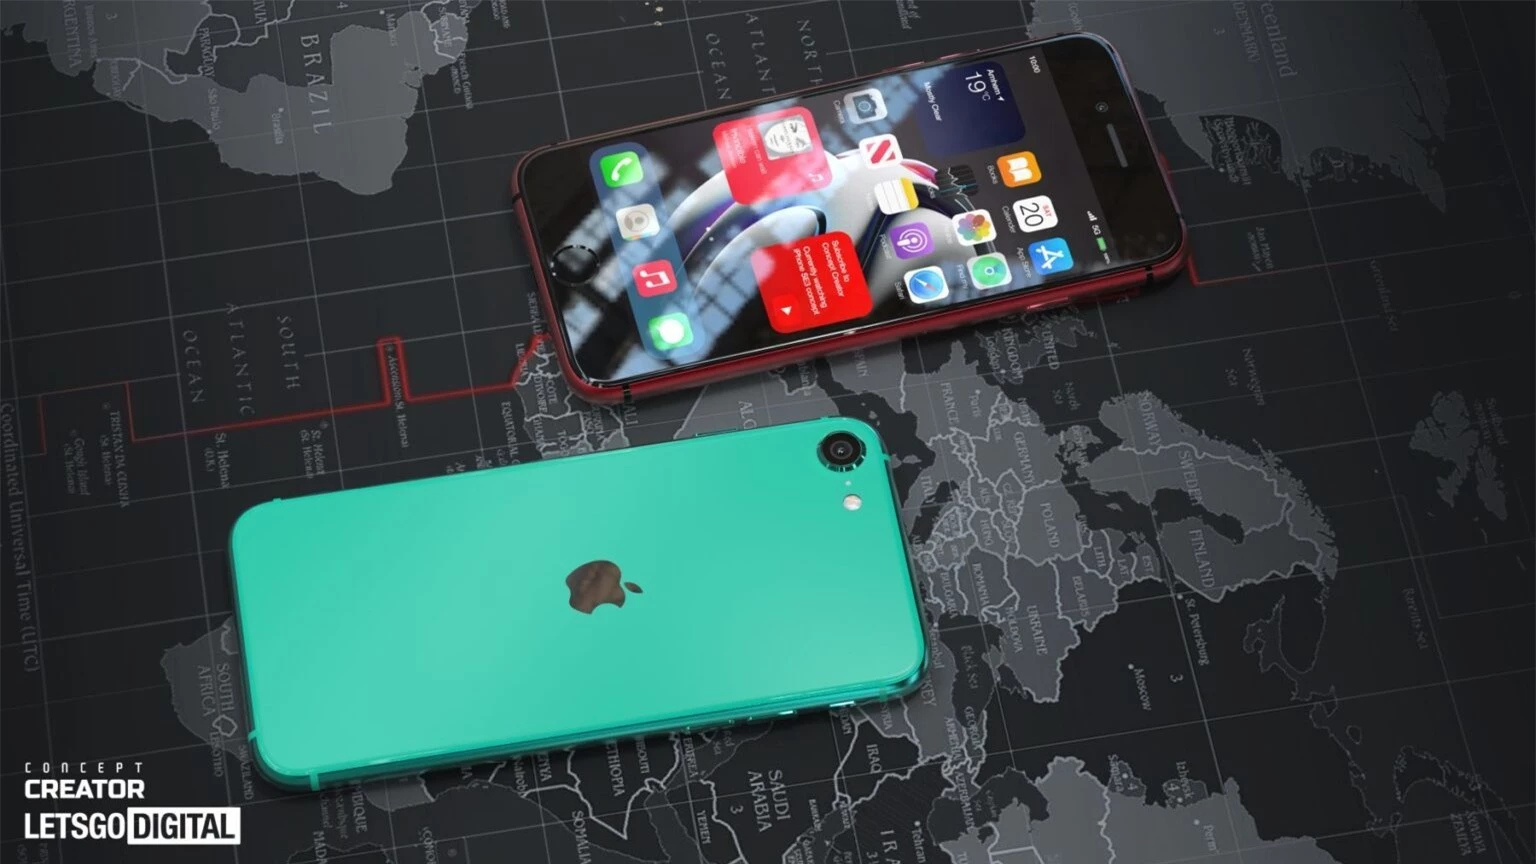 iPhone SE 2022 sẽ có giá chỉ từ 300 USD